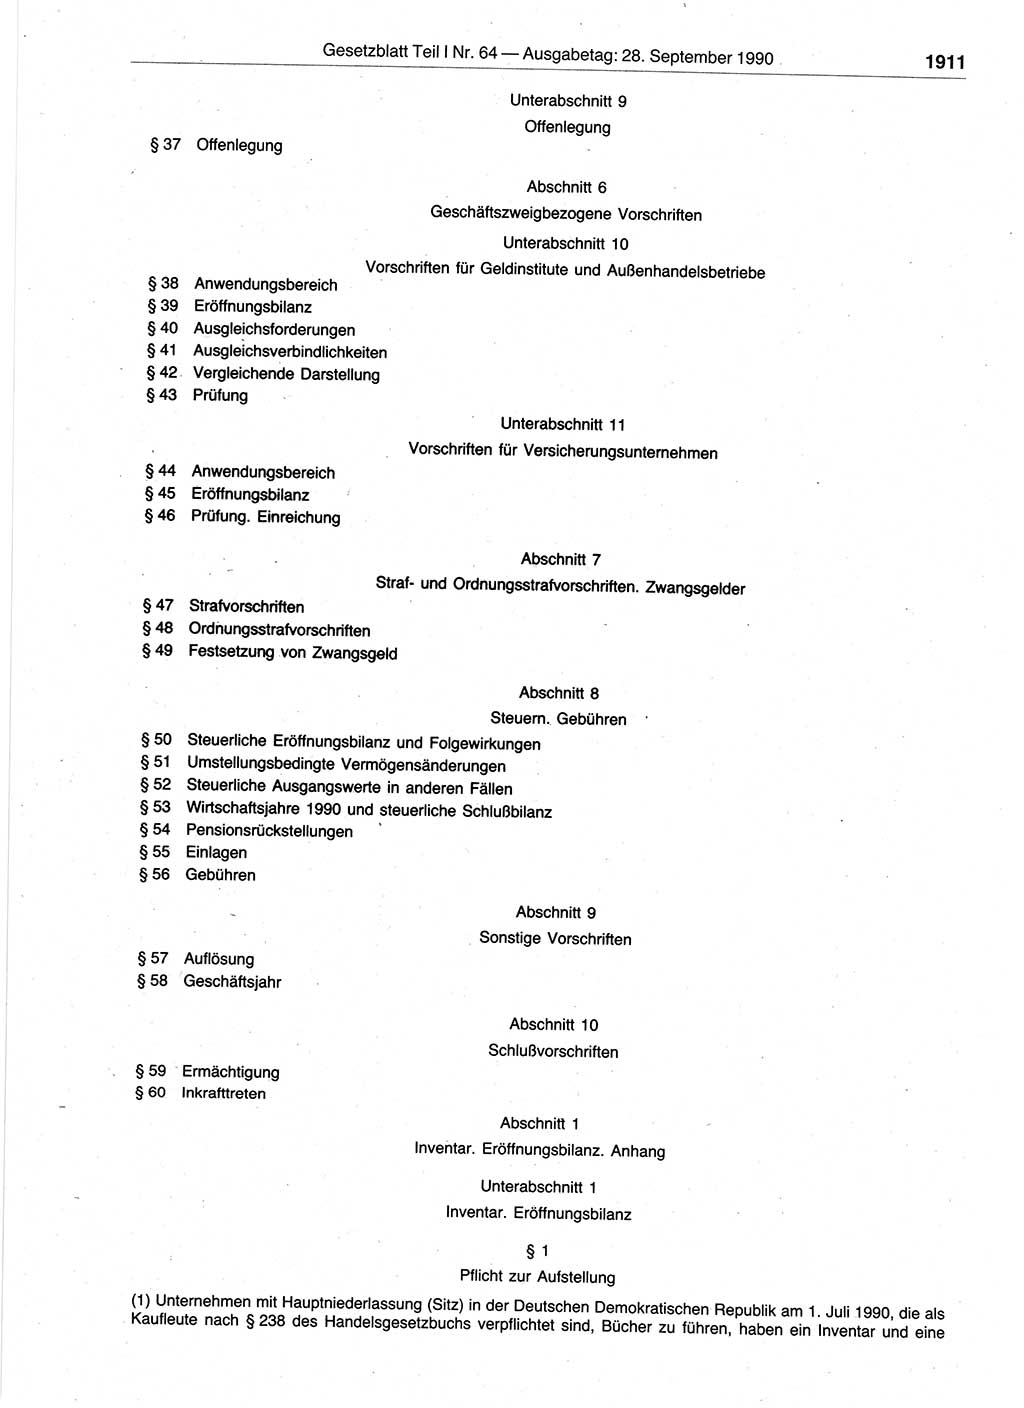 Gesetzblatt (GBl.) der Deutschen Demokratischen Republik (DDR) Teil Ⅰ 1990, Seite 1911 (GBl. DDR Ⅰ 1990, S. 1911)